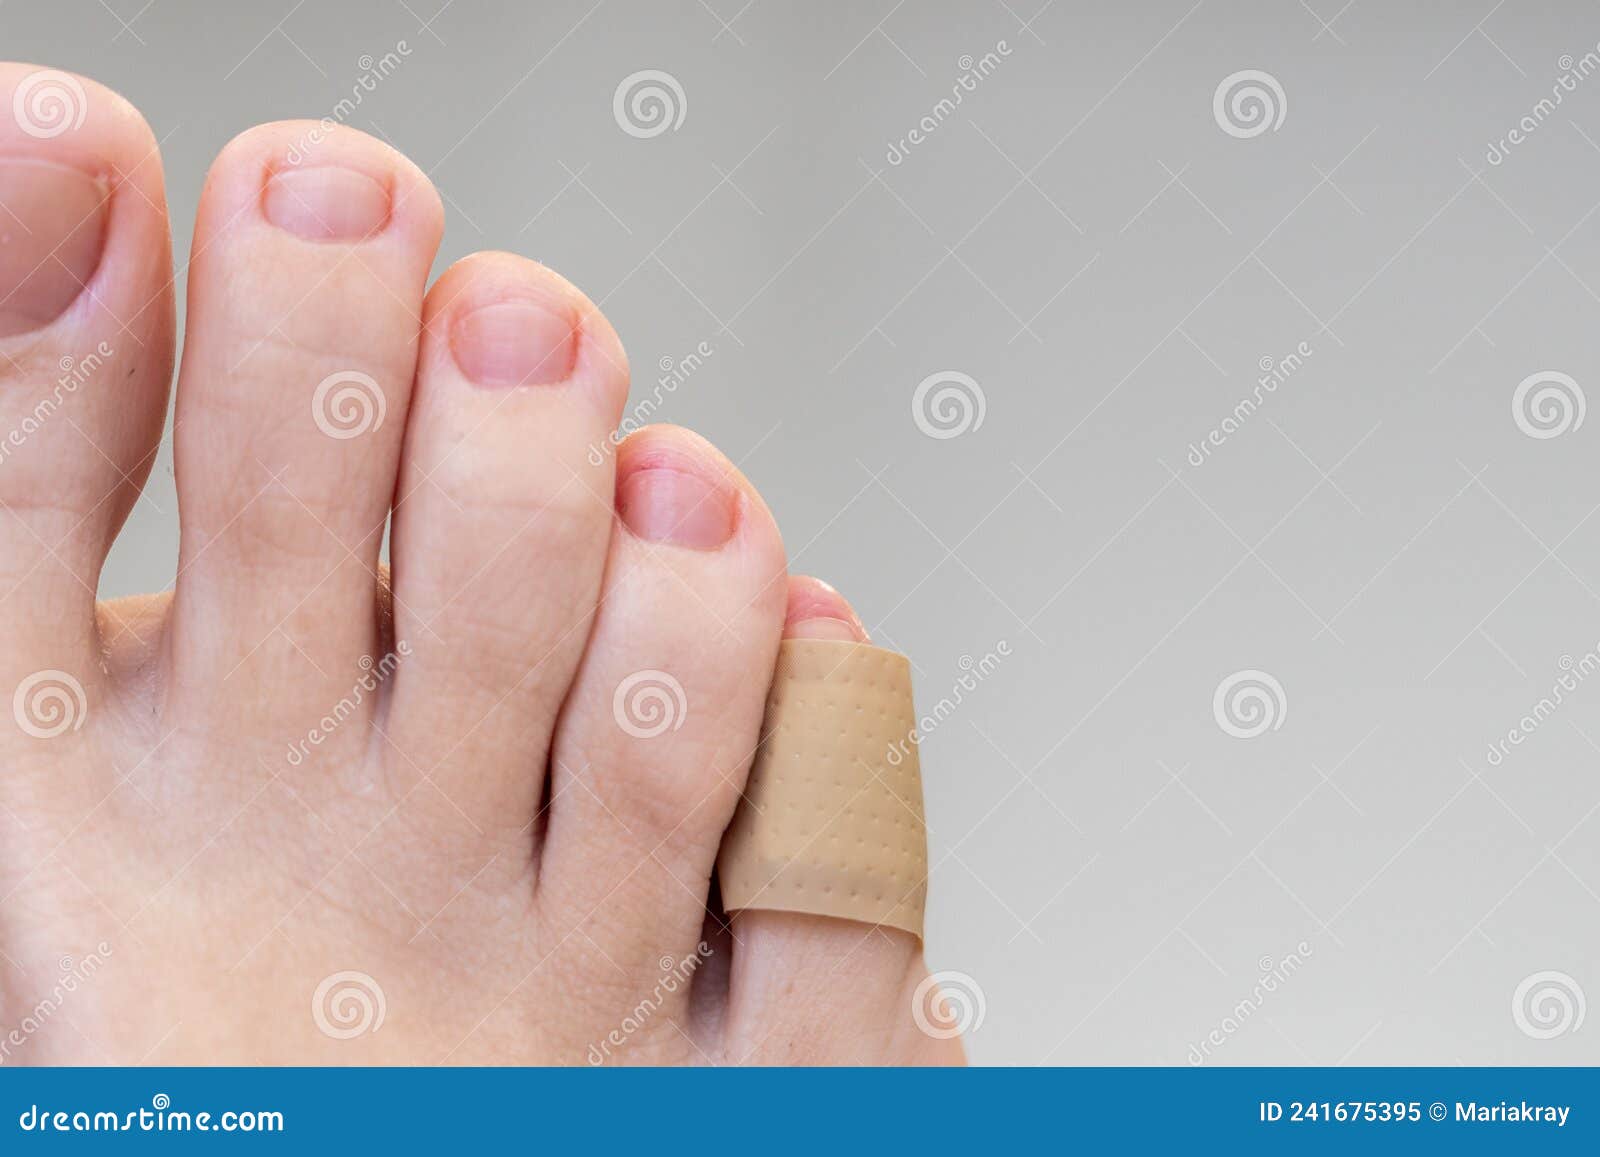 Does Vicks Vaporub really cure toenail fungus? - Quora